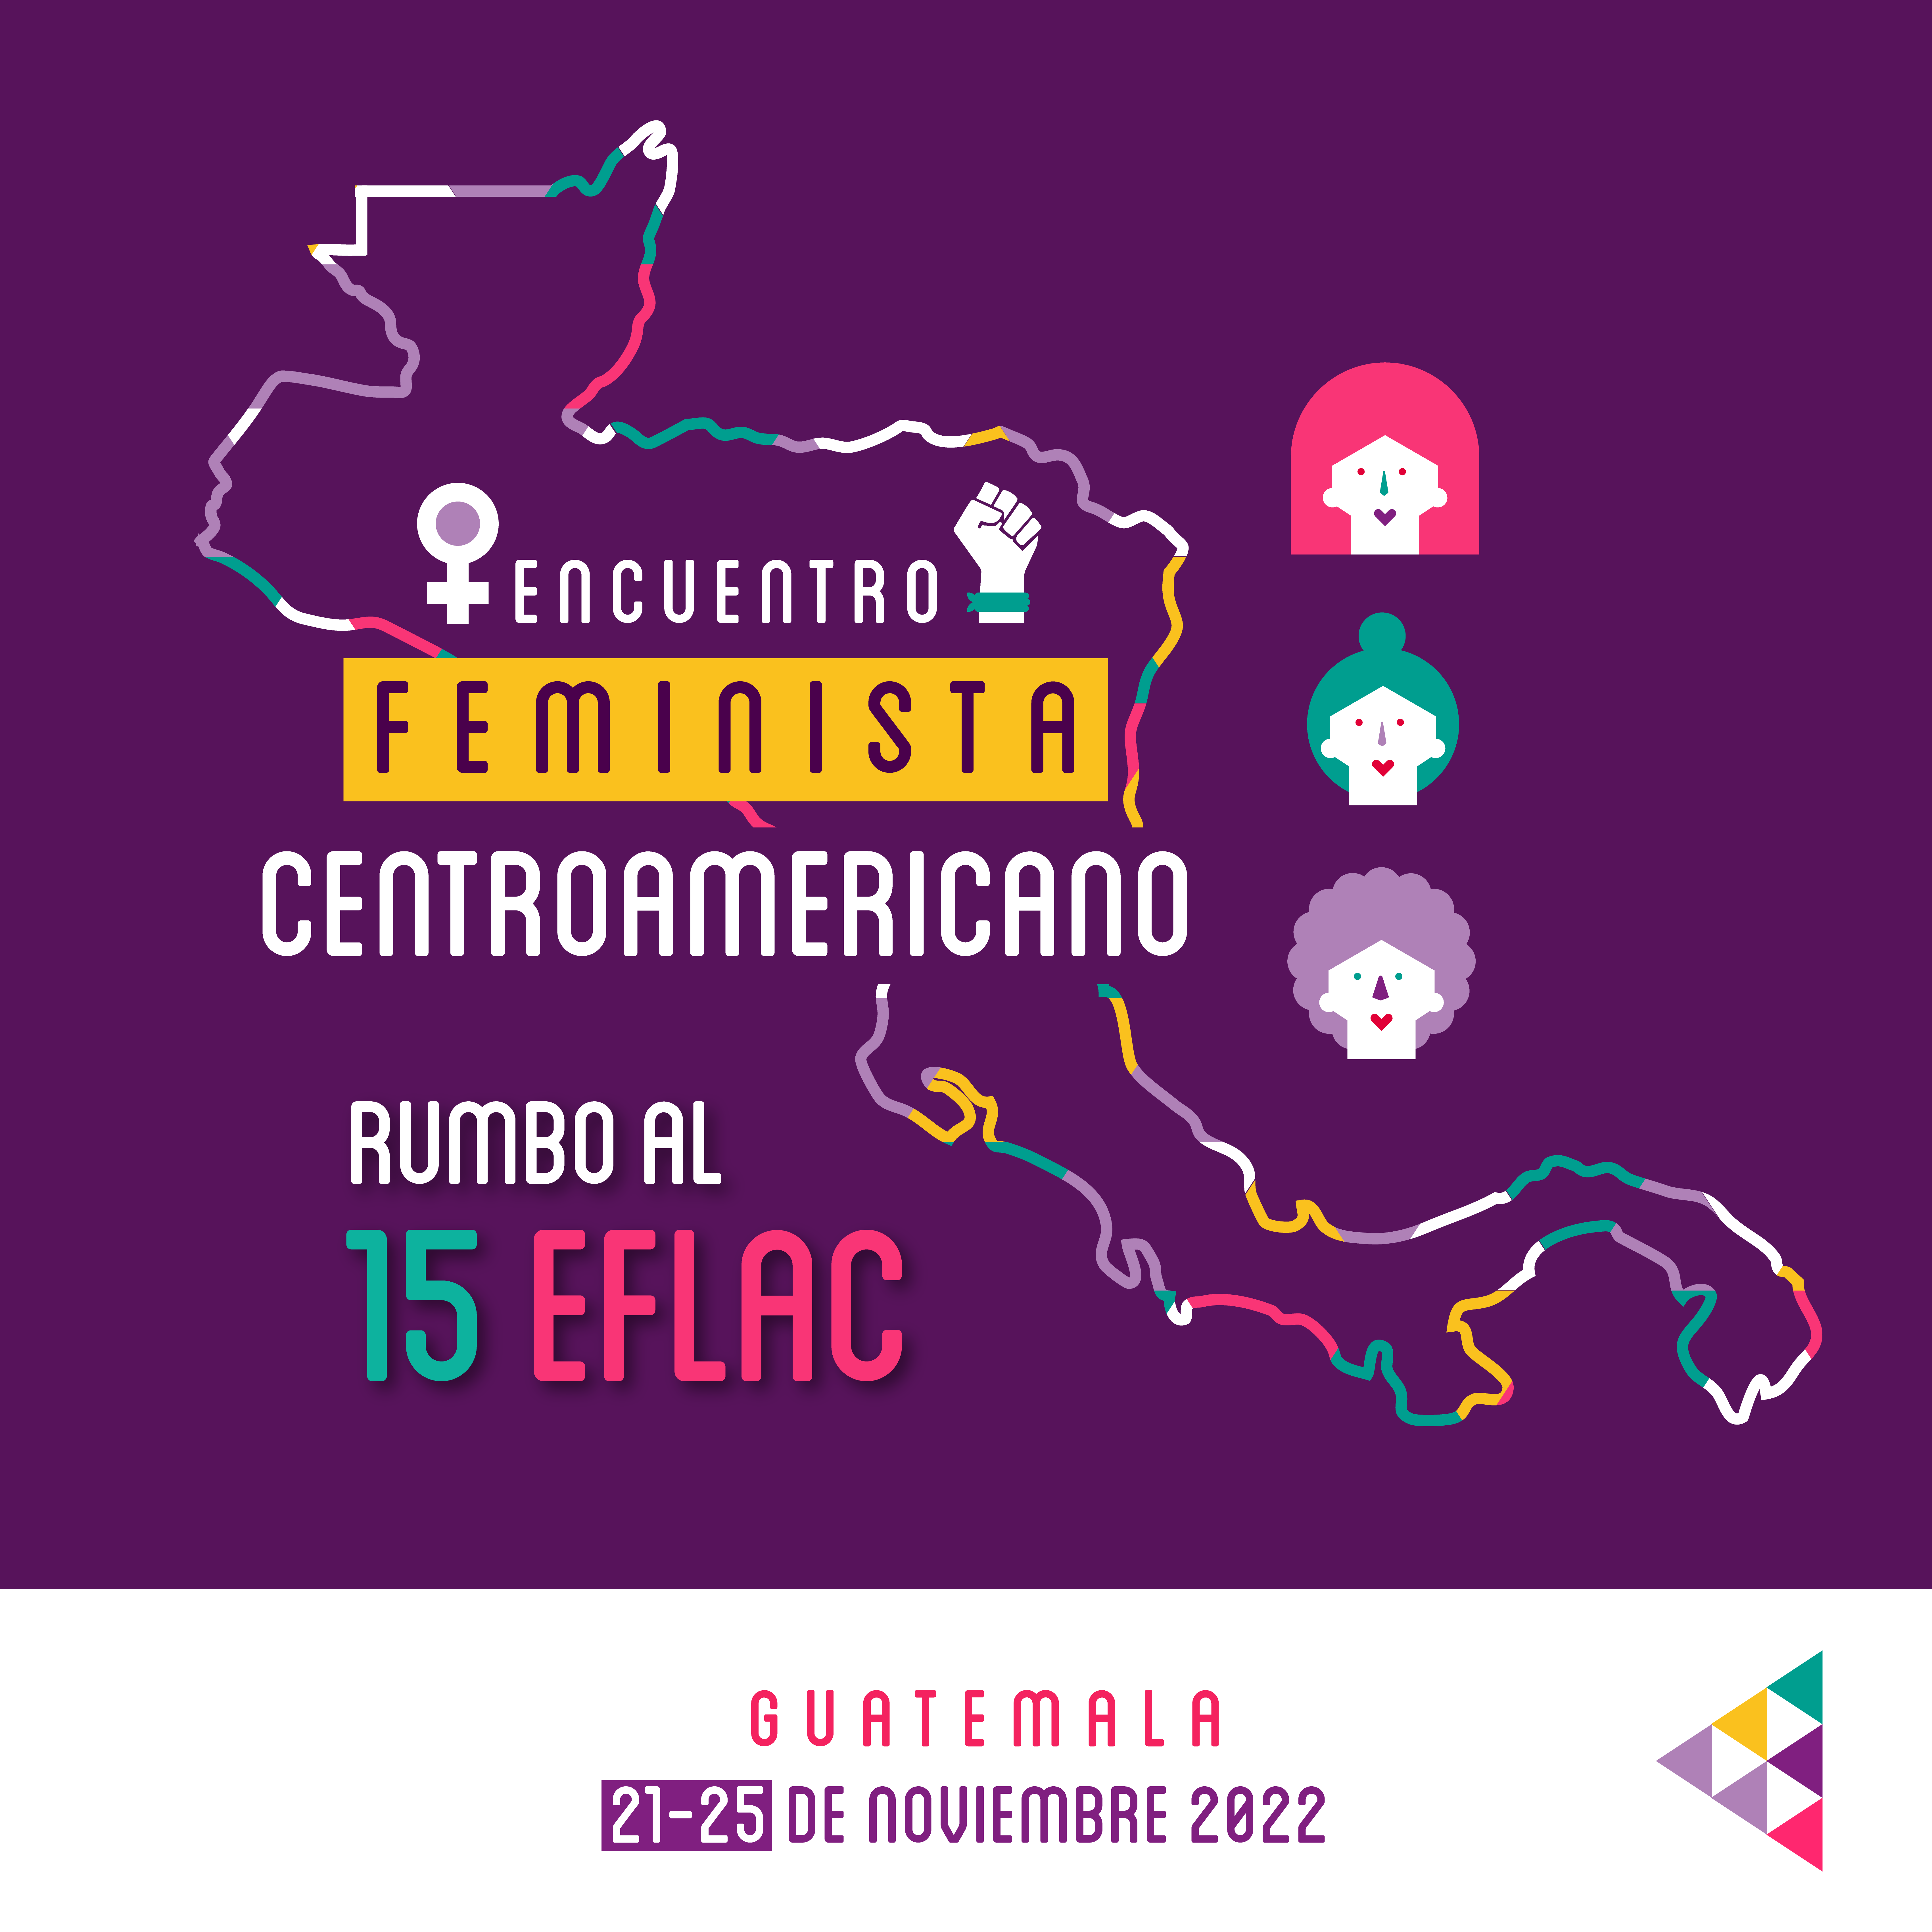 Nuestros feminismos son la voz de quienes luchamos por una Centroamérica unida y resistiendo